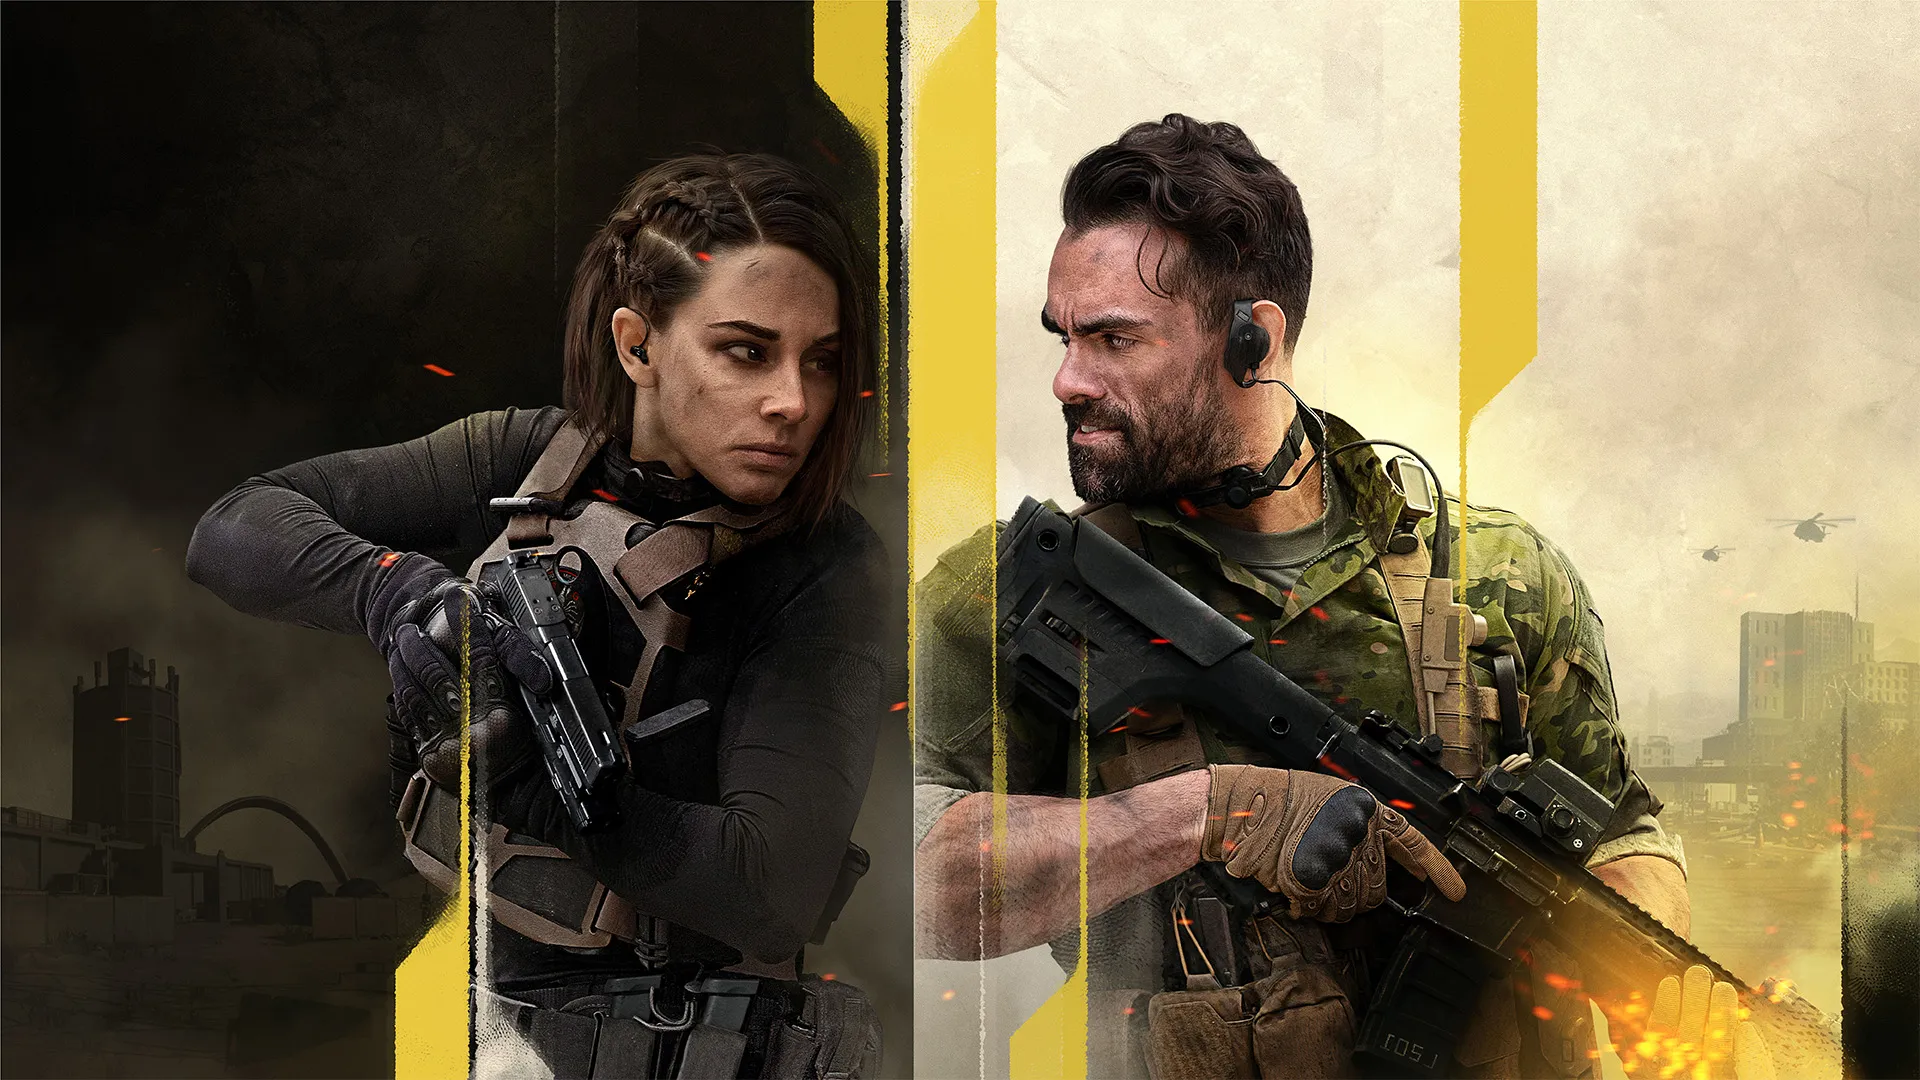 Call of Duty Warzone 2: requisitos atualizados para rodar o jogo